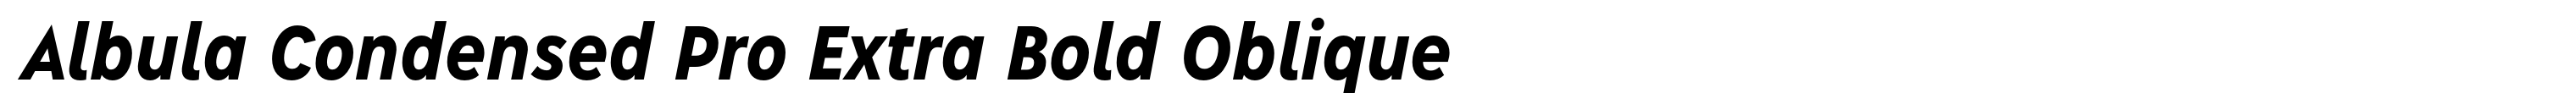 Albula Condensed Pro Extra Bold Oblique